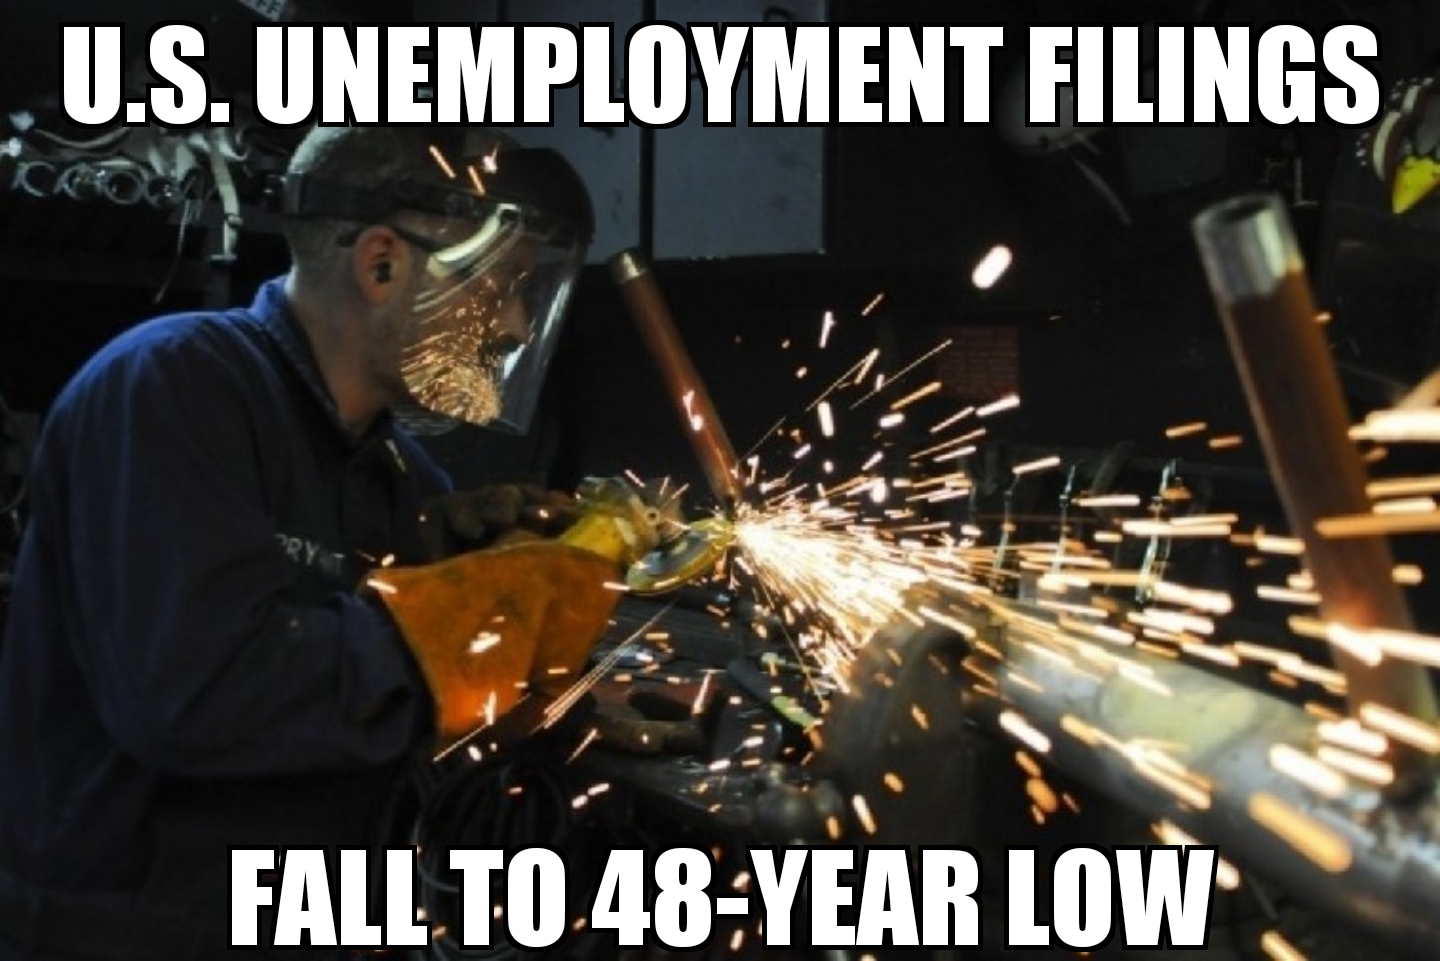 U.S. unemployment 48-year low